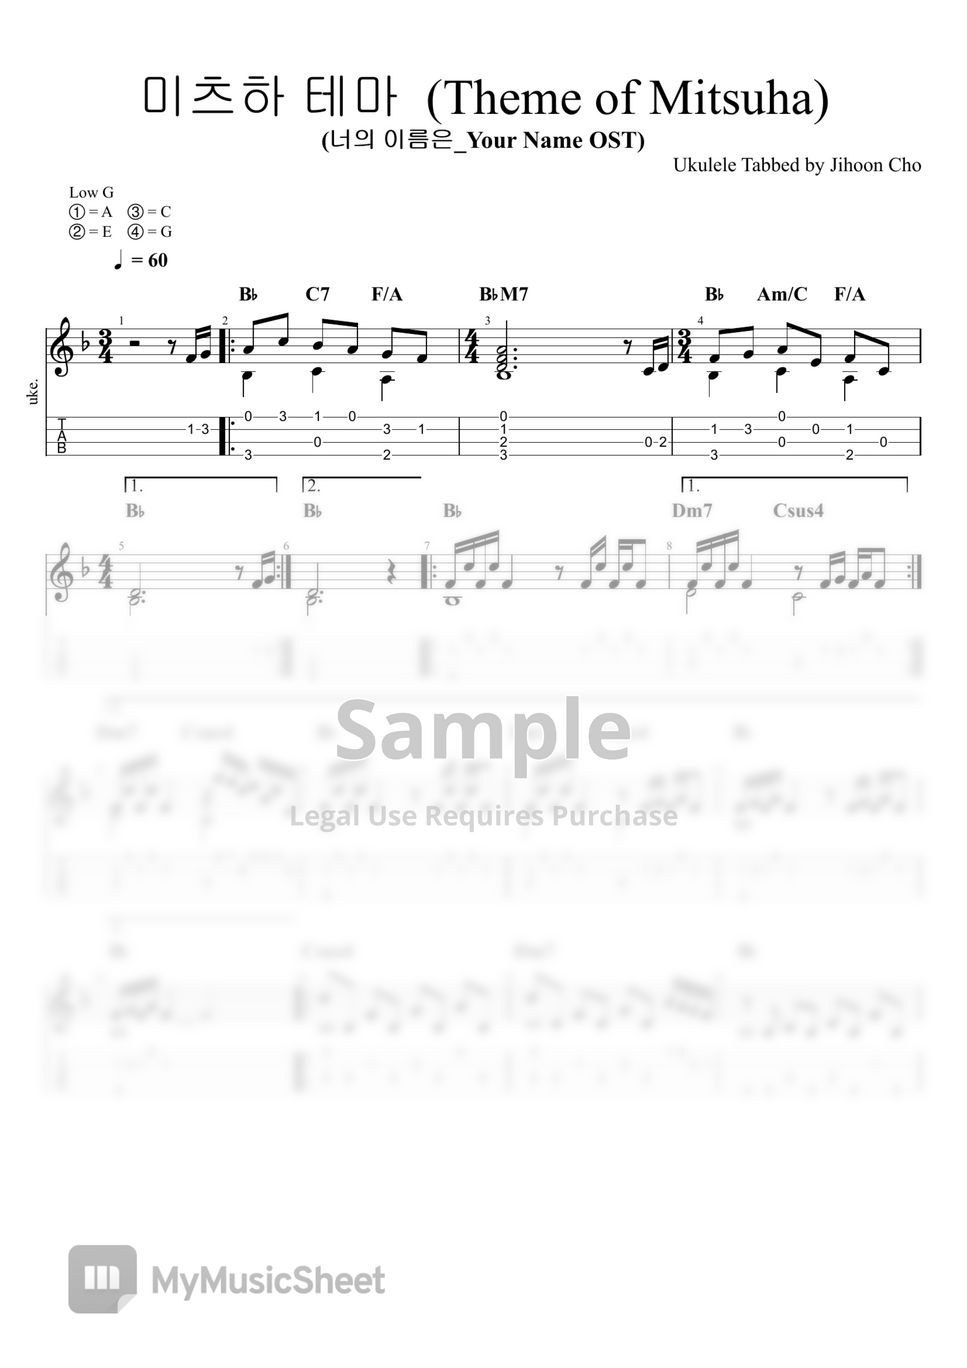 RADWIMPS - Mitsuha's Theme (Your Name OST) (Ukulele Score Chord TAB) by Jihoon Cho